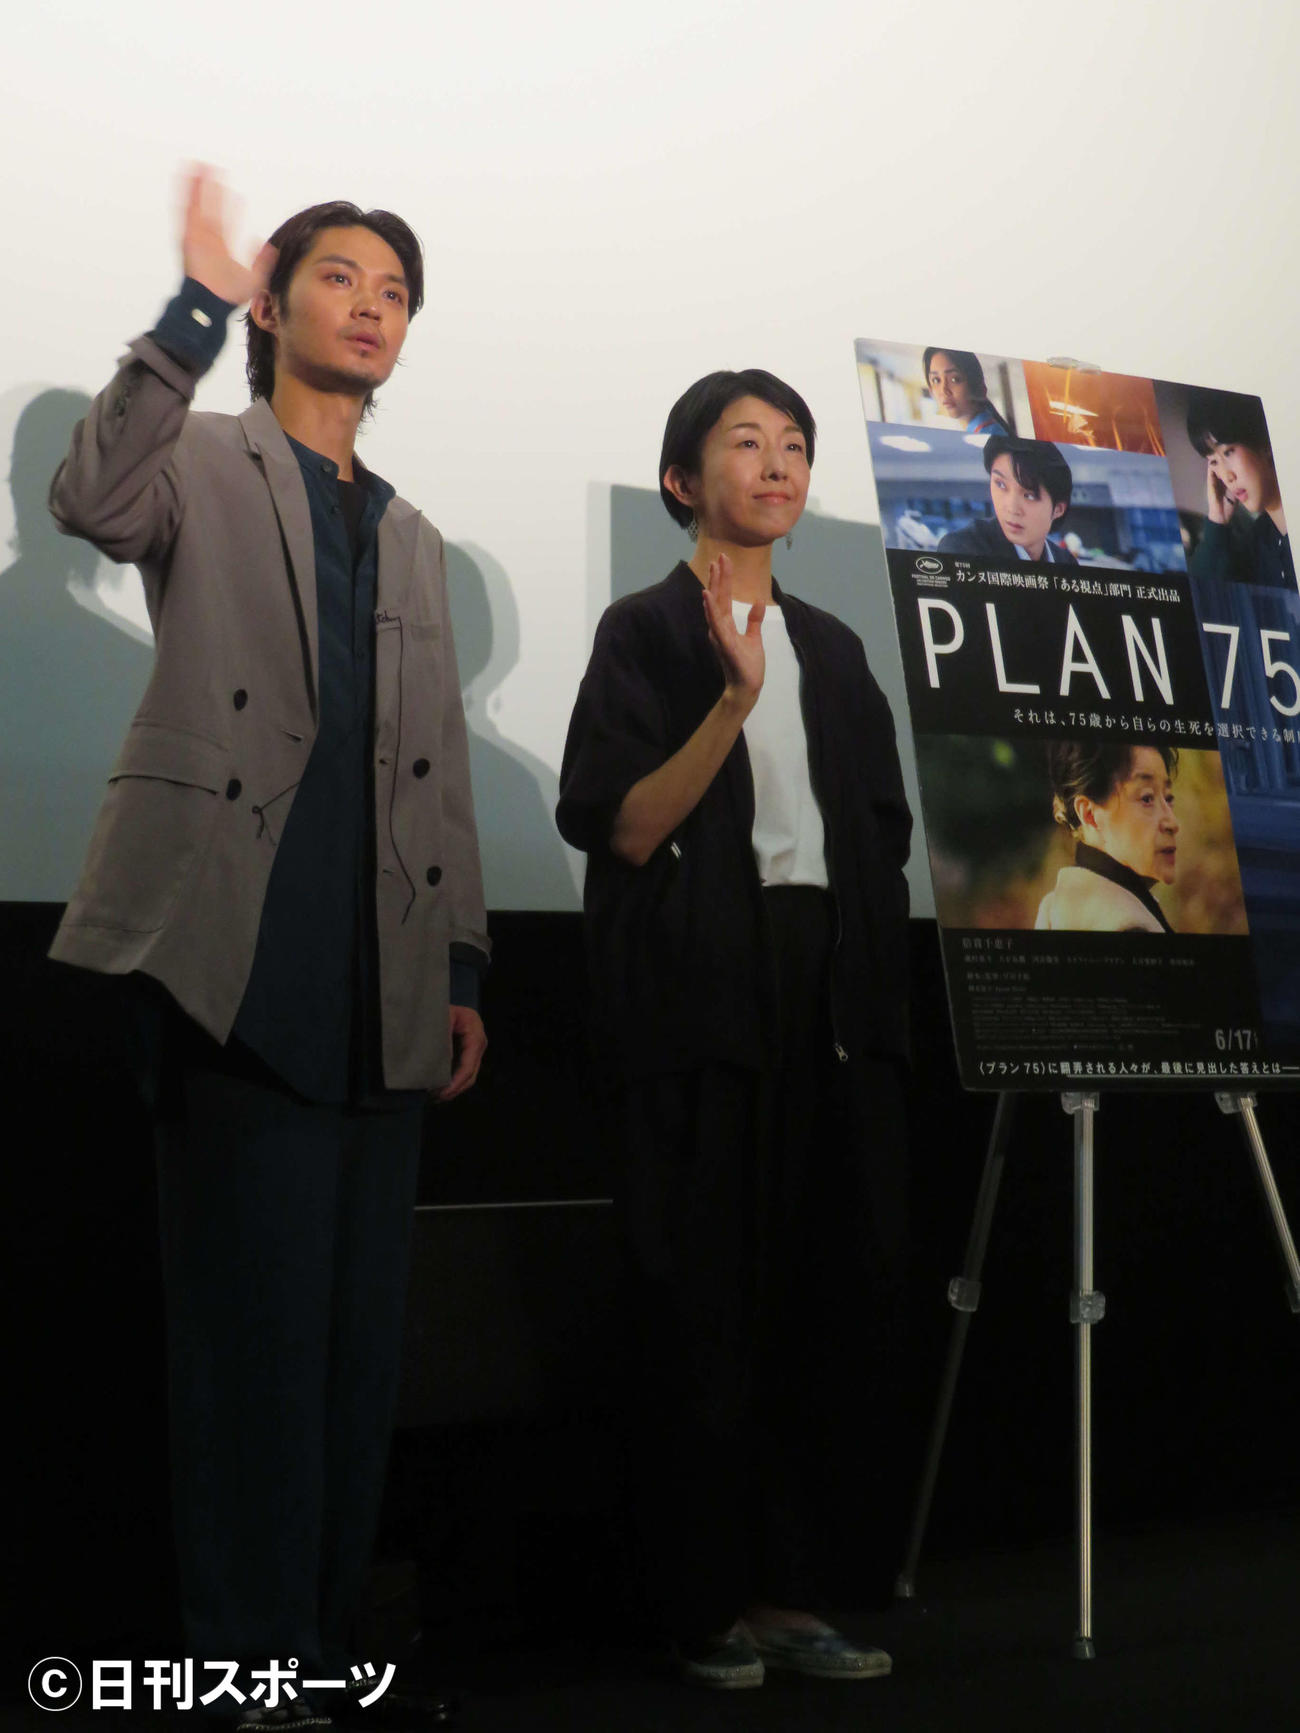 映画「PLAN 75」大ヒット記念舞台あいさつに登壇した、磯村勇斗と早川千絵監督（撮影・村上幸将）